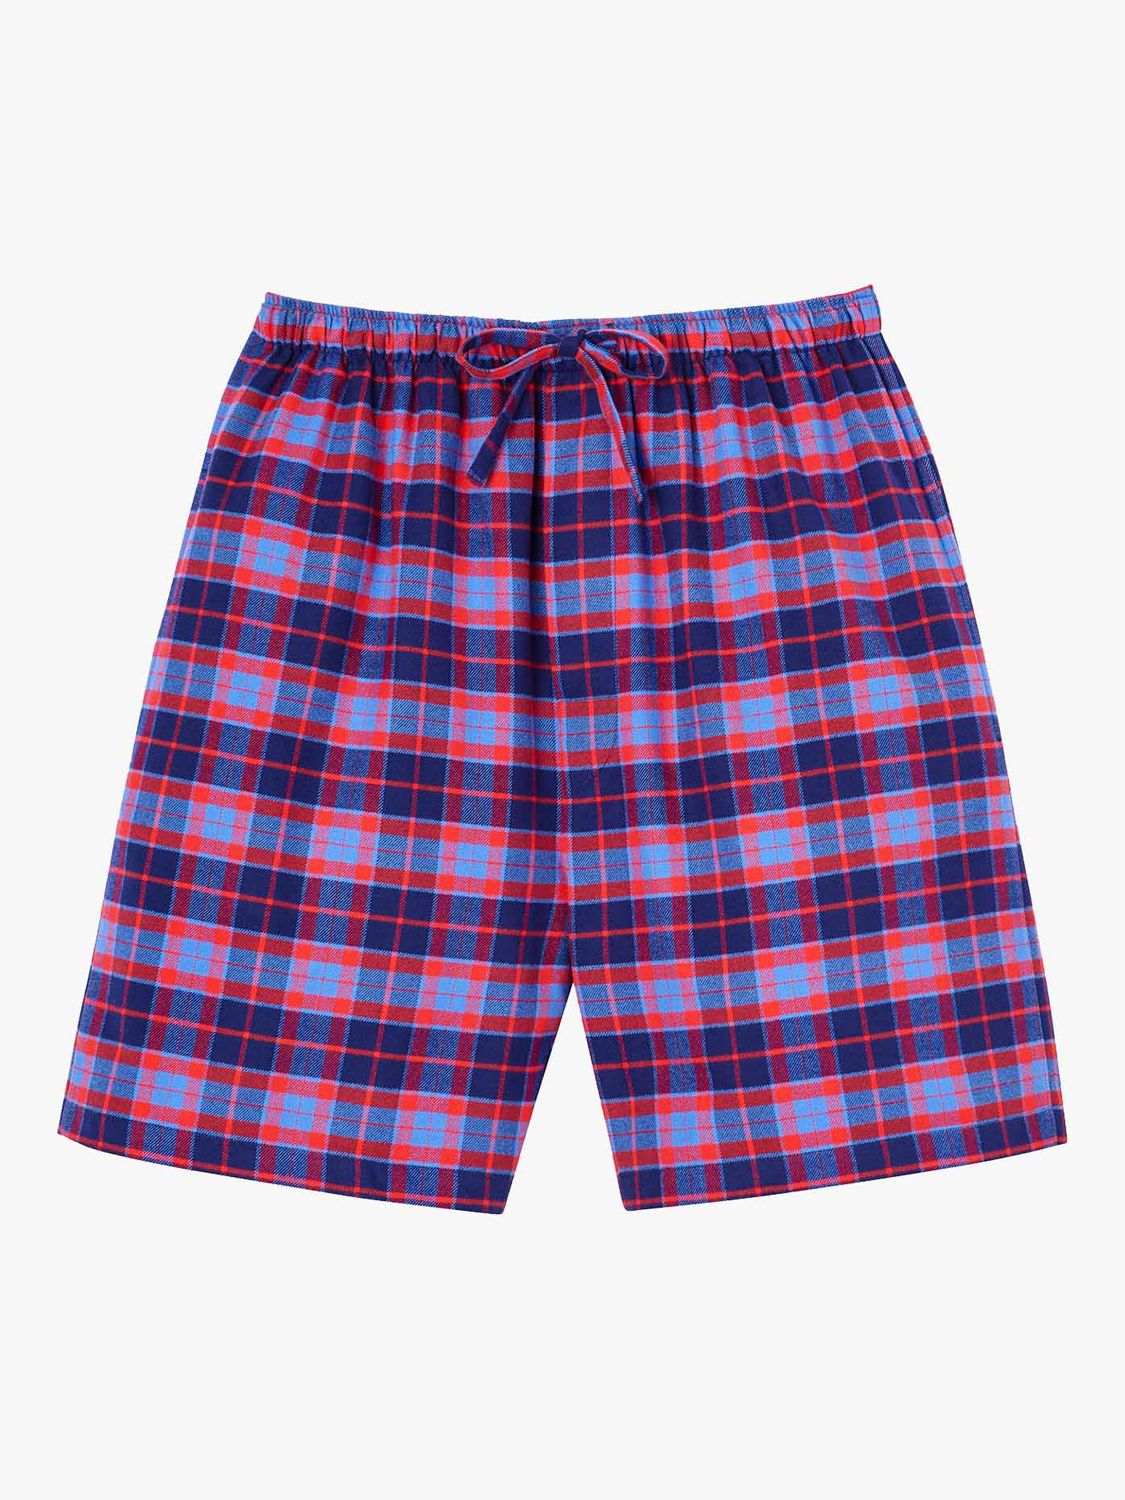 British Boxers Tartan Print Brushed Cotton Pyjama Shorts, Blue/Red at ...